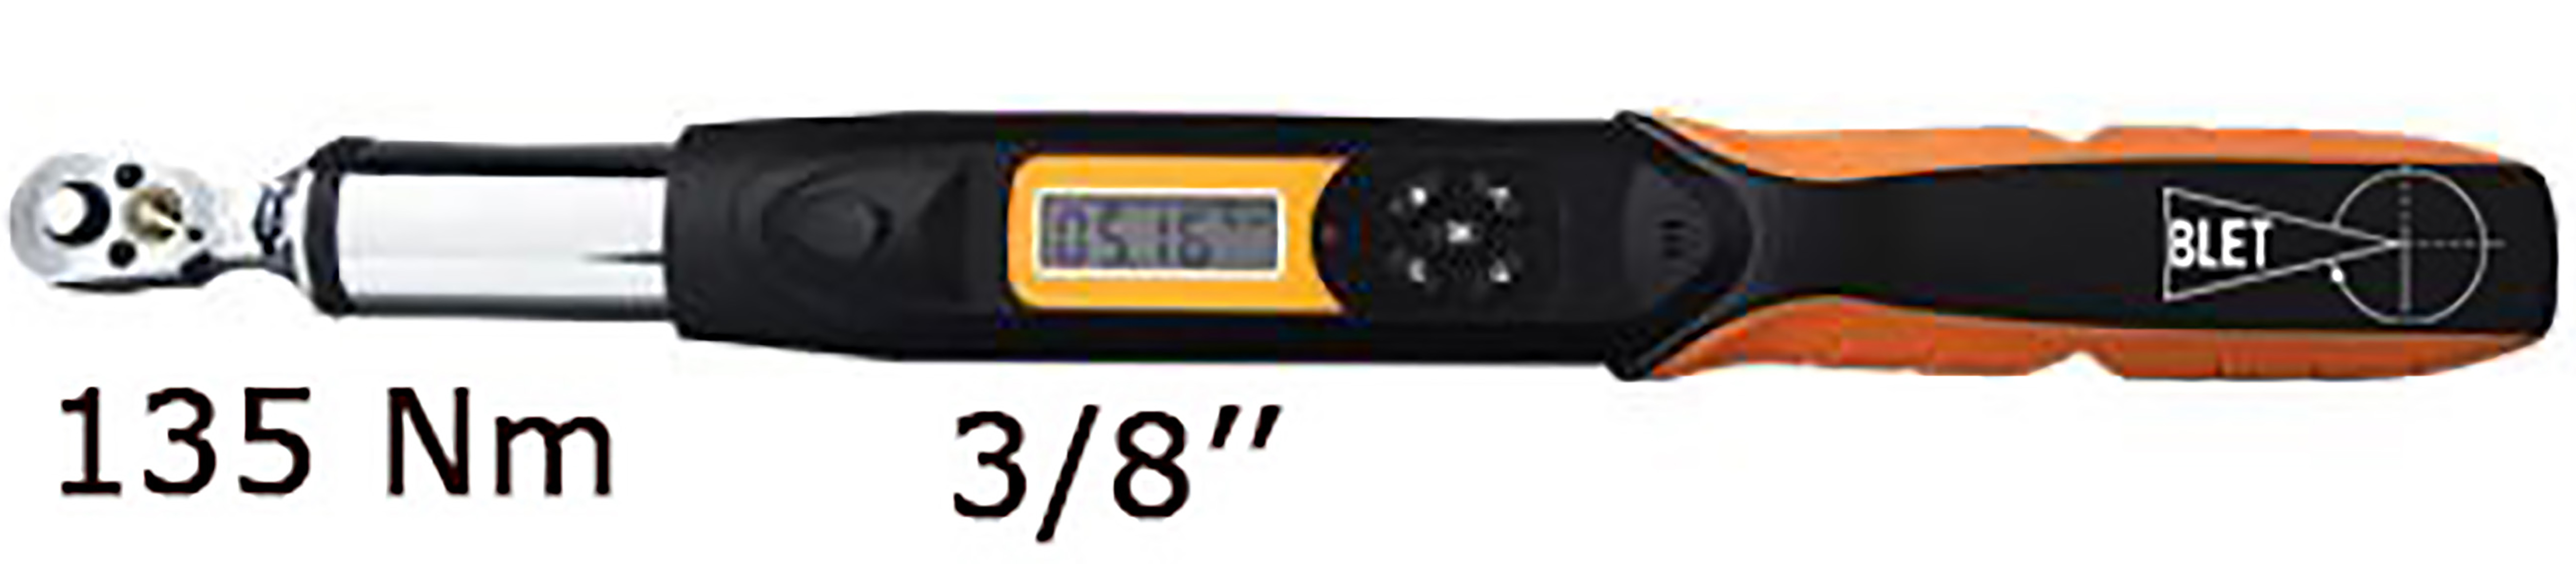 CLE DYNAMOMETRIQUE ELECTRONIQUE AVEC COMMUNICATION 135 Nm LECTURE 0,1 Nm TAILLE 3/8" BLET<br>Ref : CLET5-CDP13538